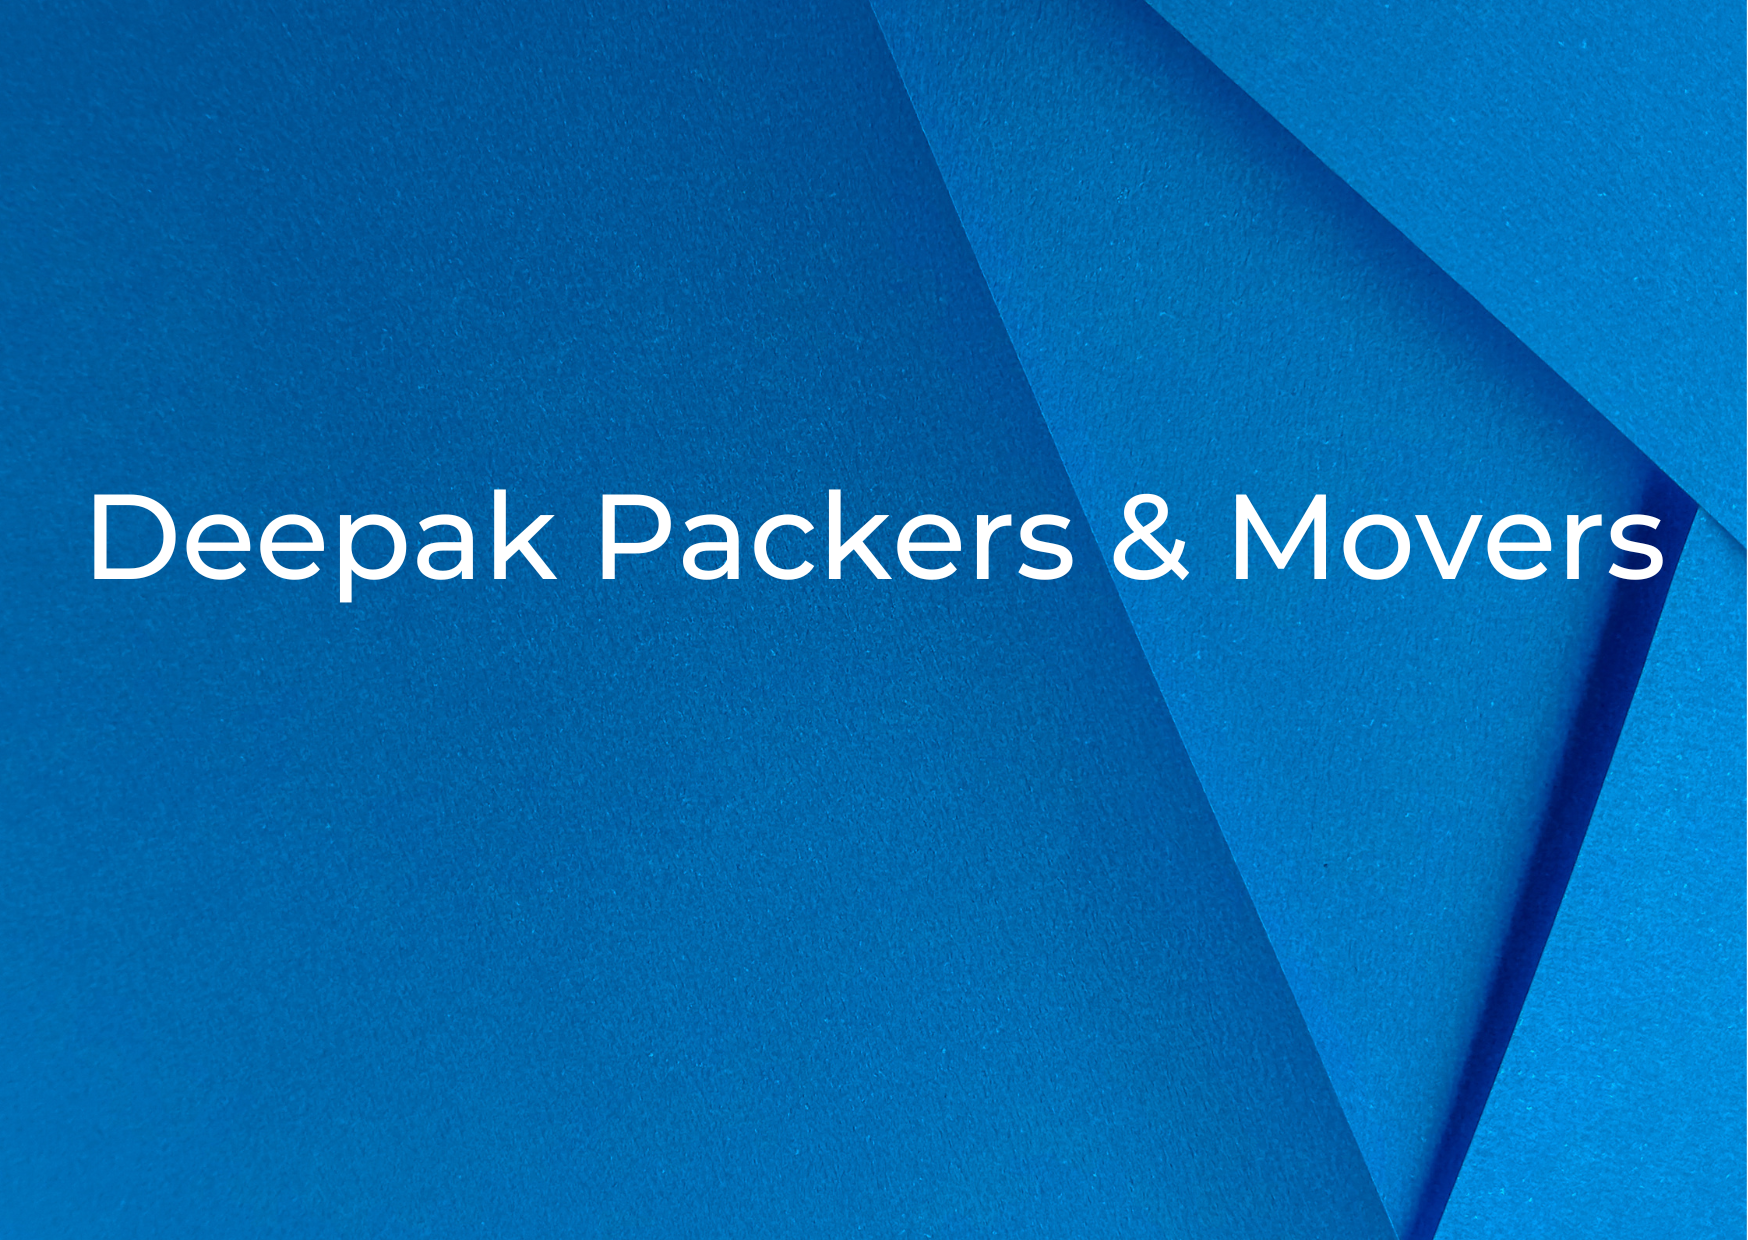  Deepak Packers & Movers,   